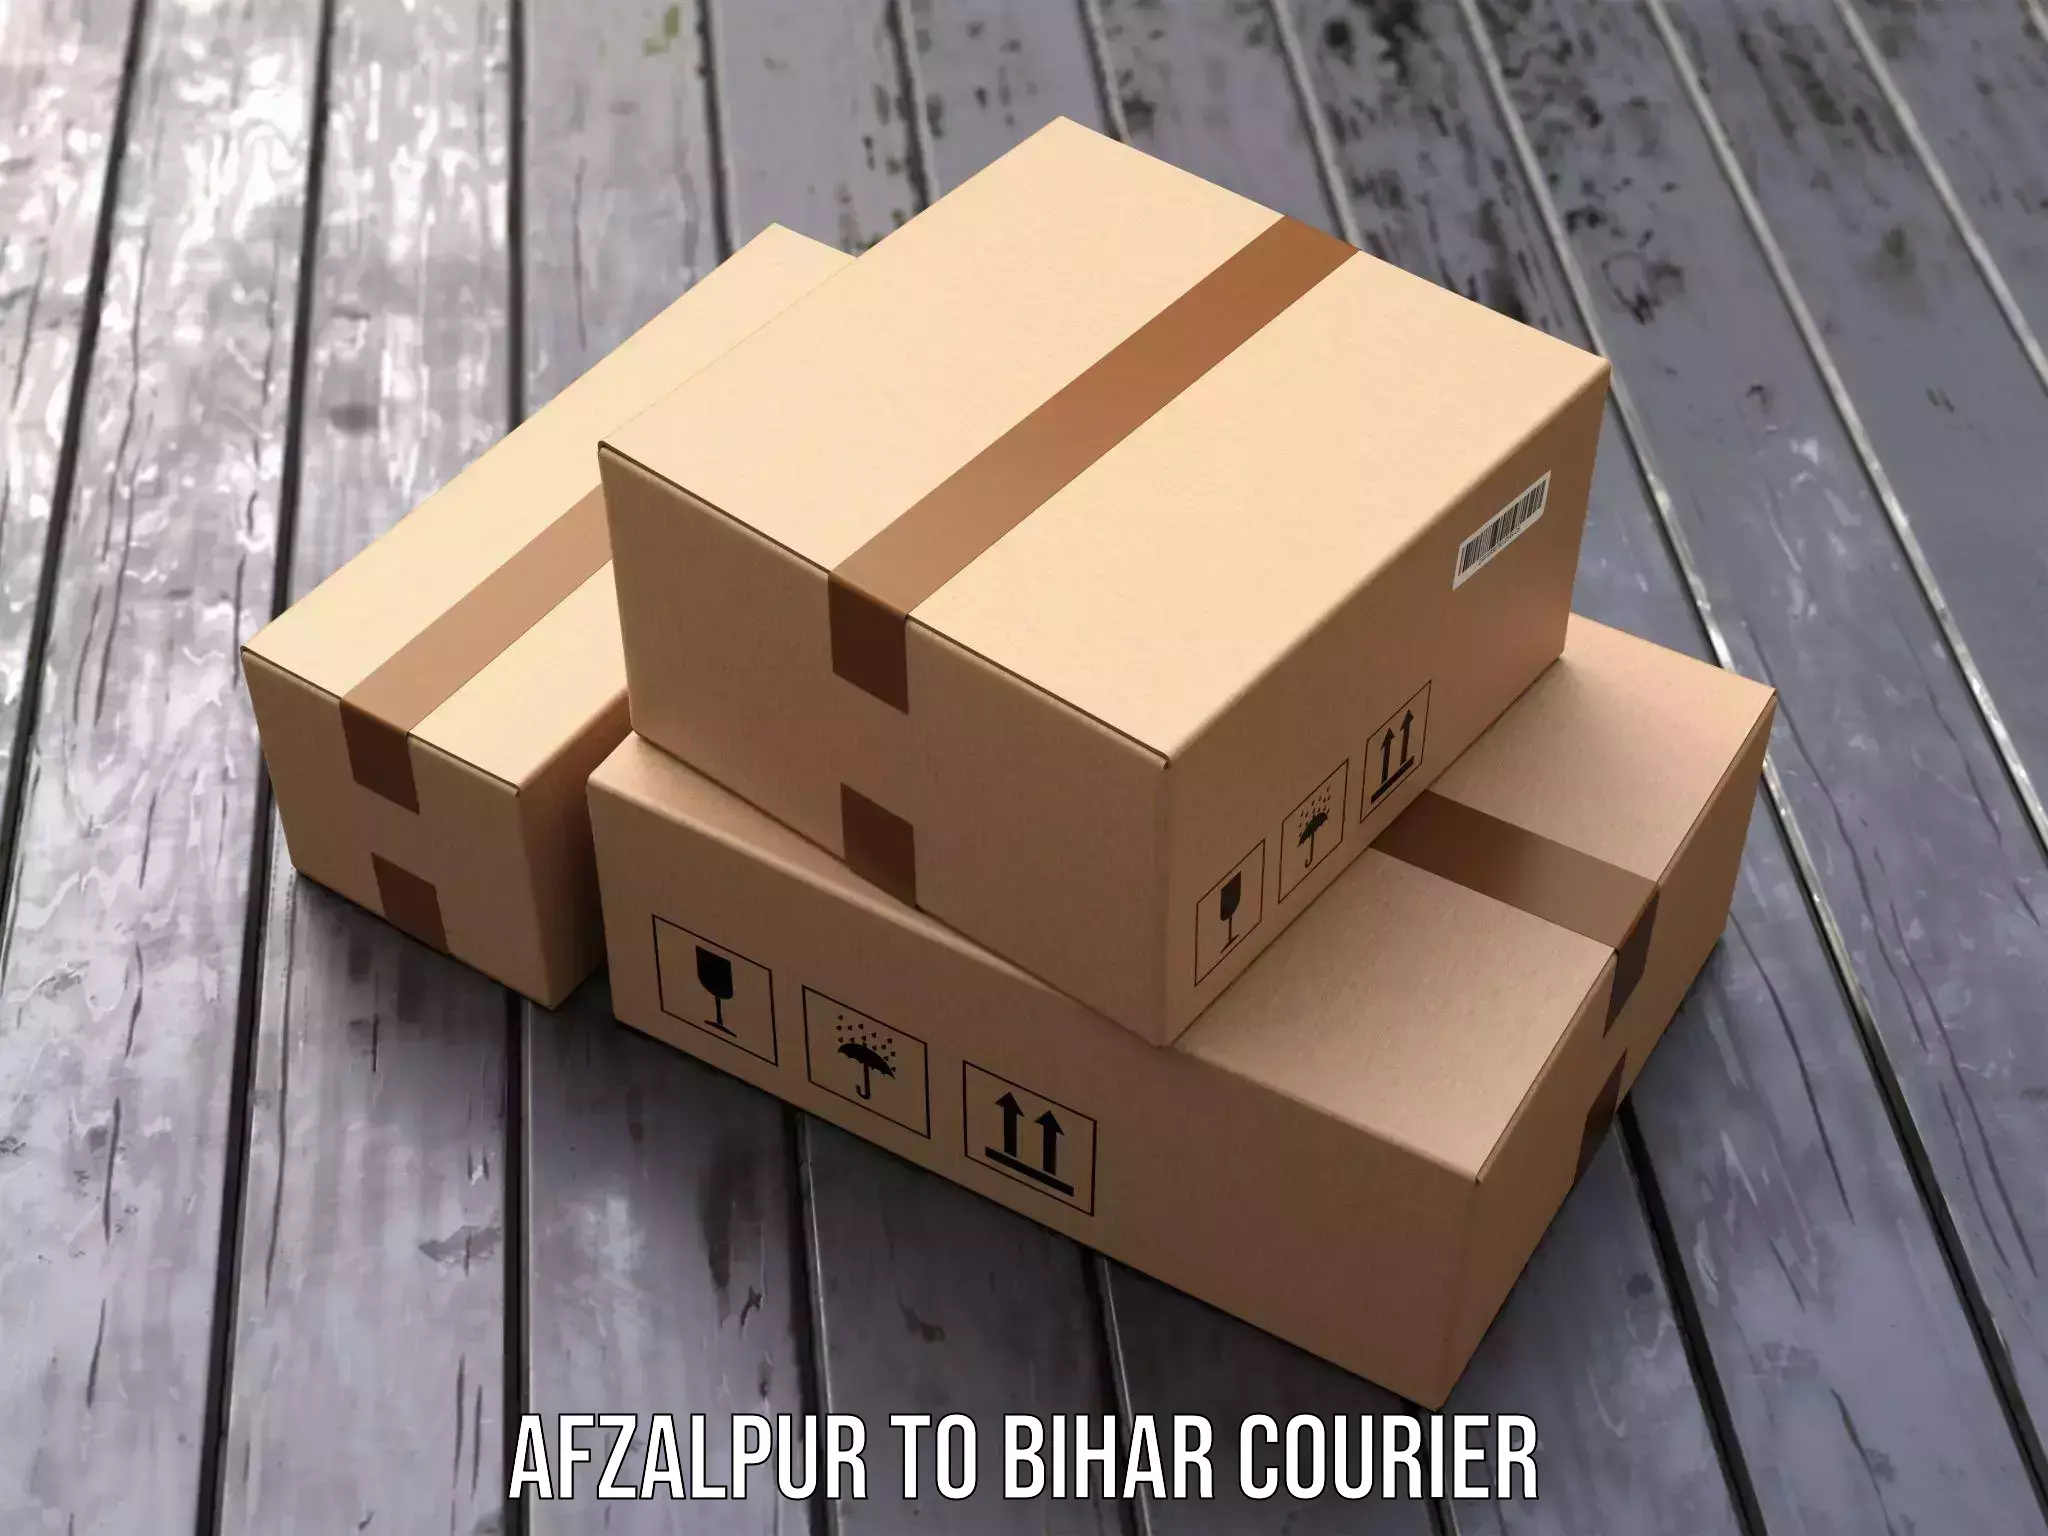 Next-generation courier services Afzalpur to Bhagalpur